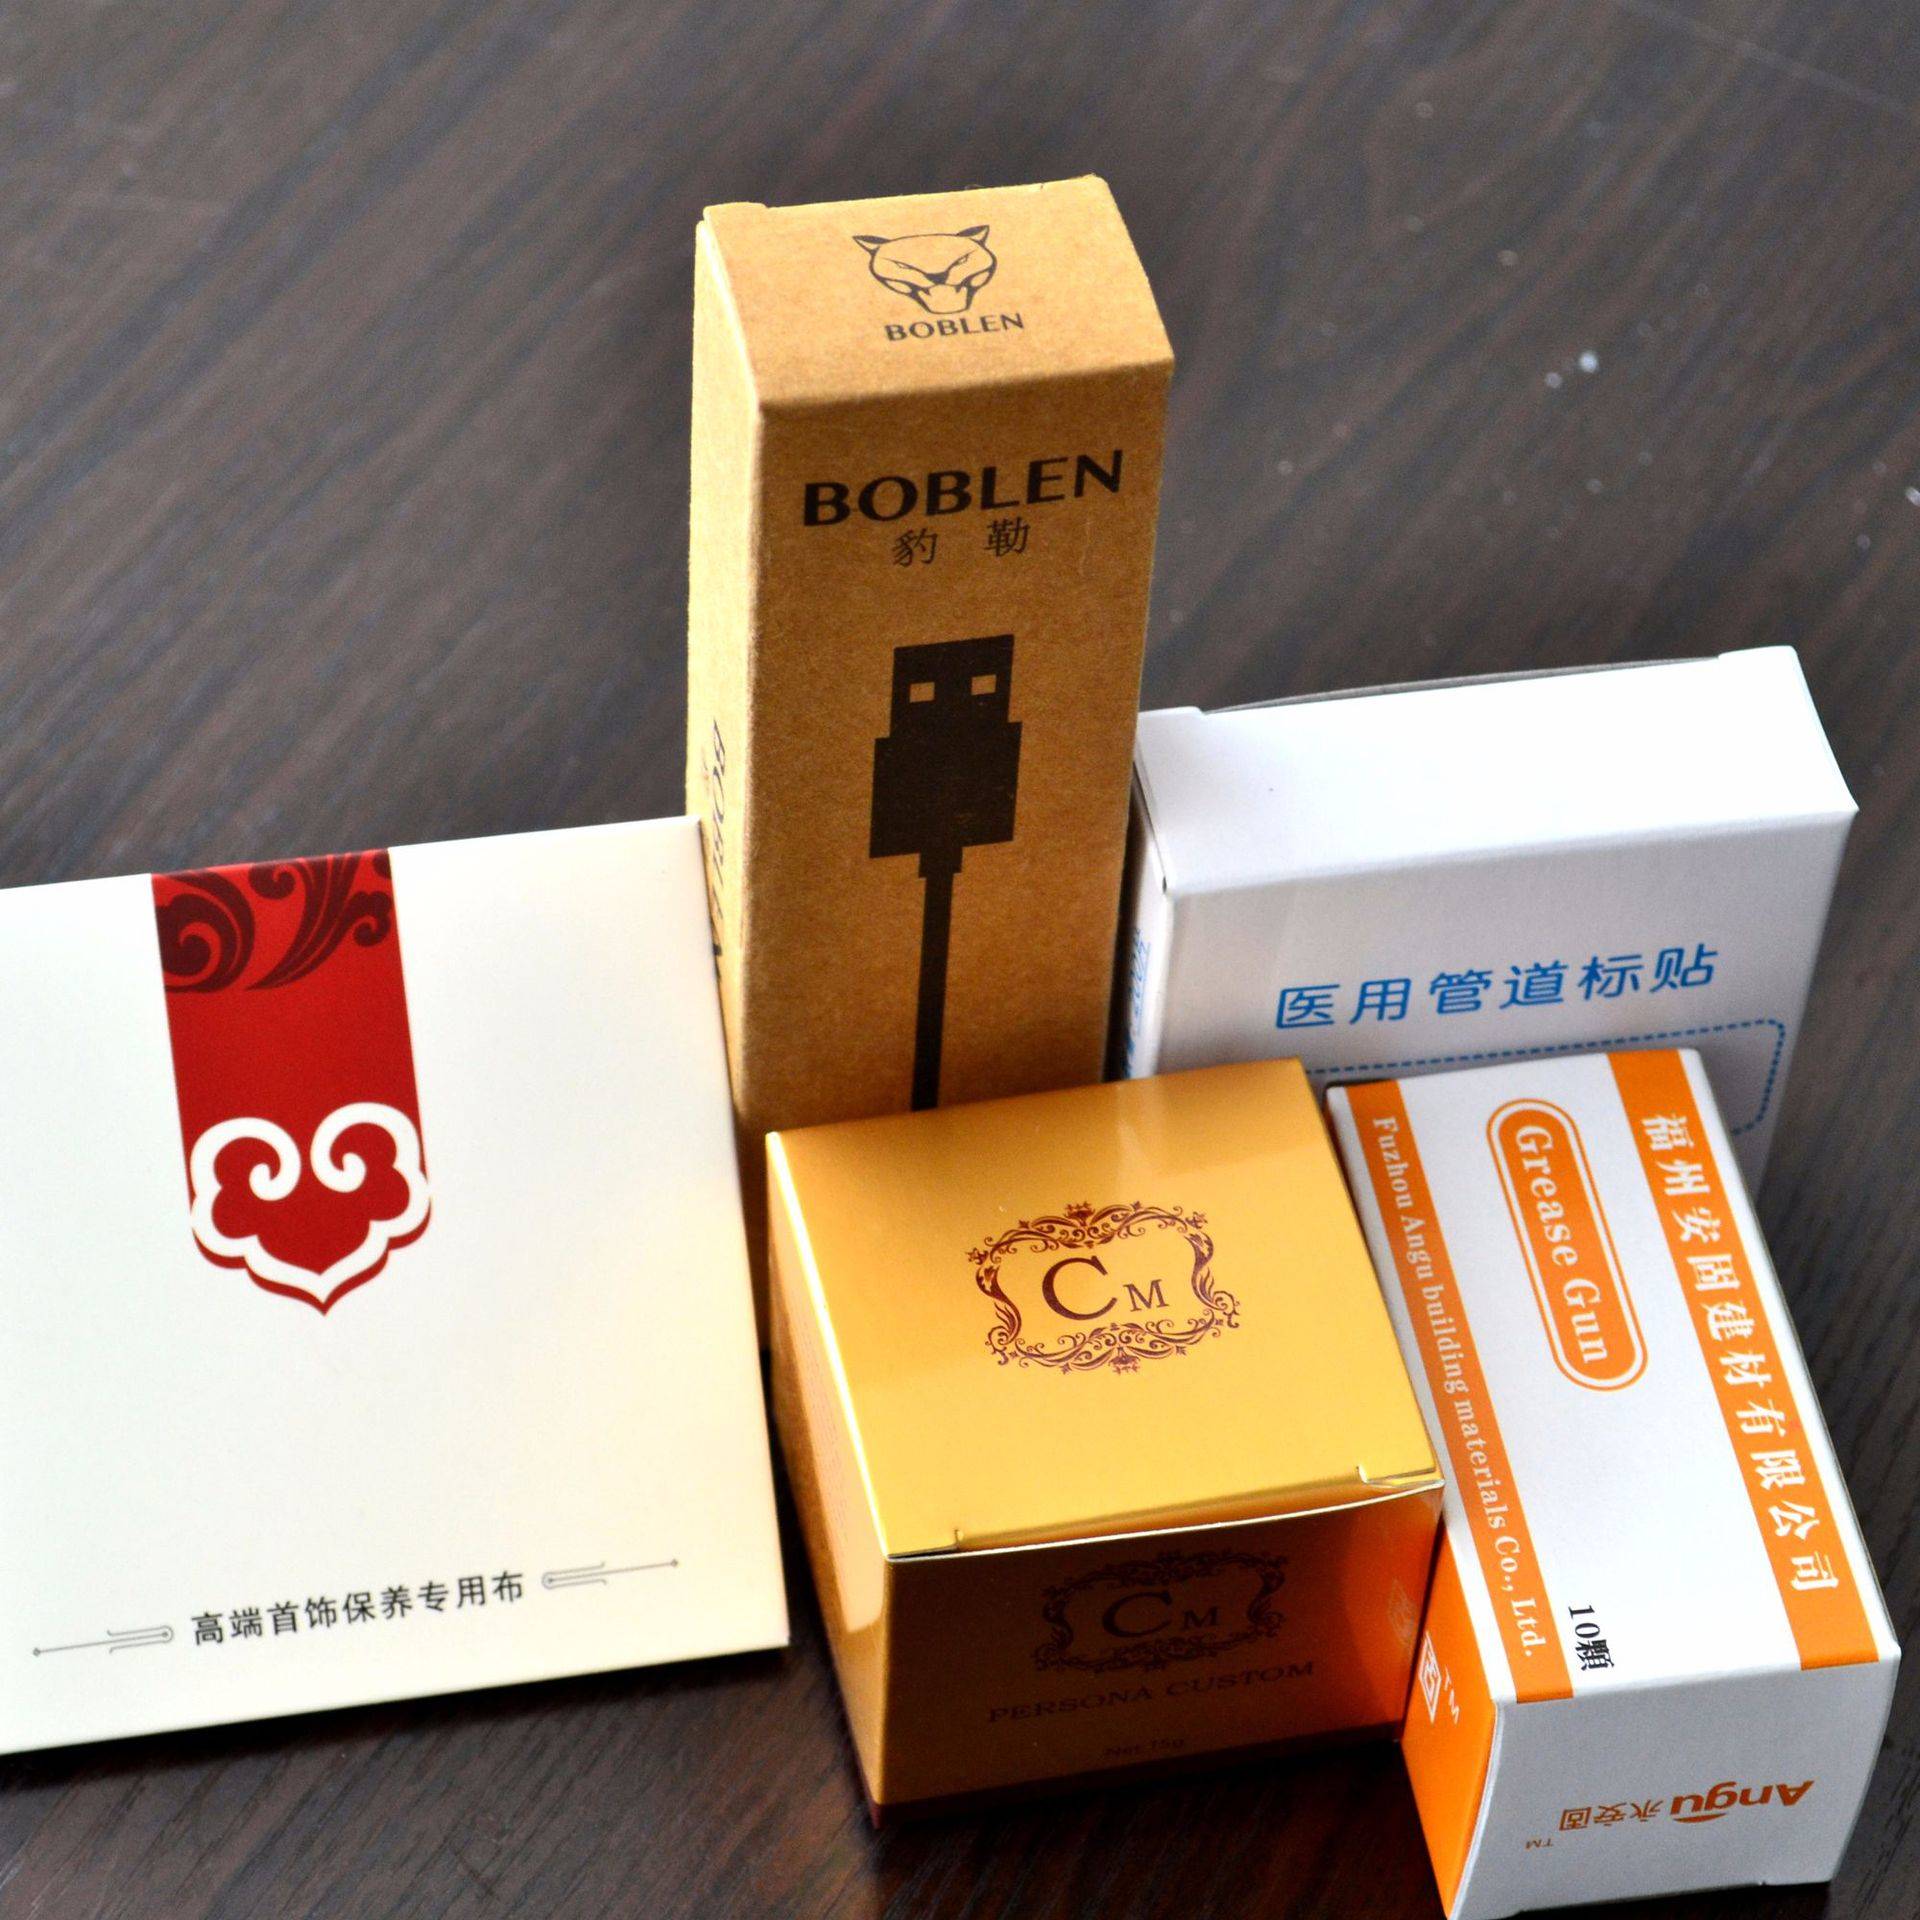 彩盒定做设计印刷彩盒包装盒制作纸盒包装盒白卡纸定制包装彩盒